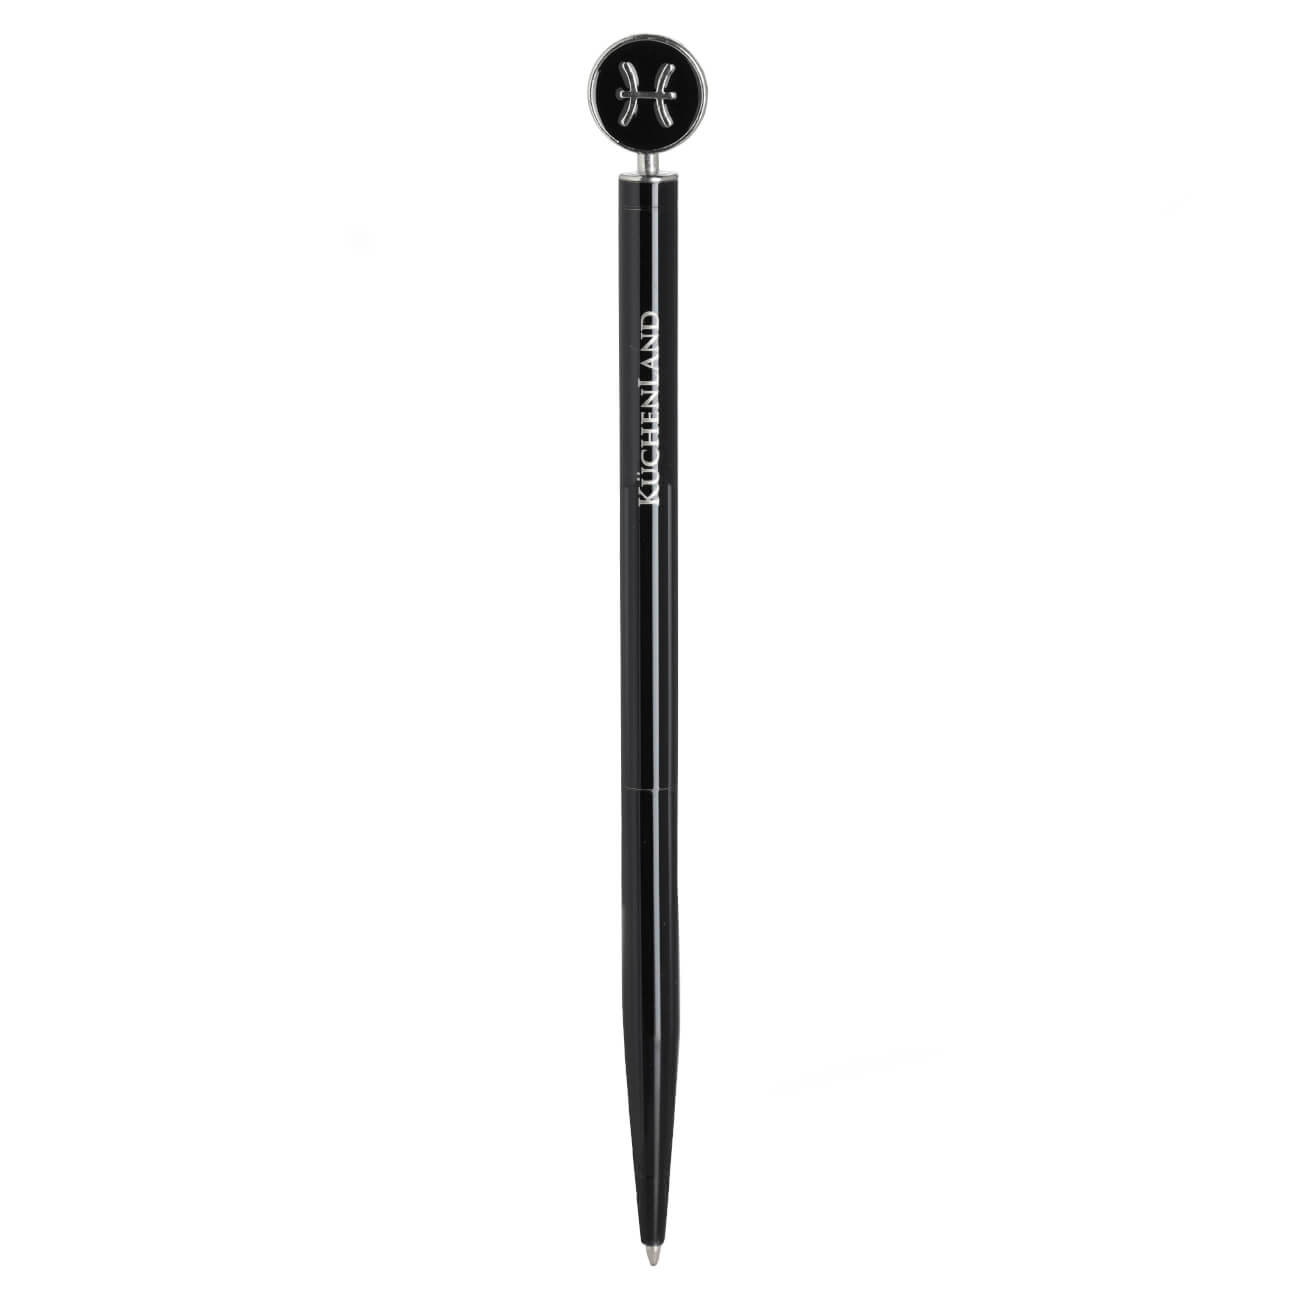 Ручка шариковая, 15 см, с фигуркой, сталь, черно-серебристая, Рыбы, Zodiac ручка подарочная шариковая в пластиковом футляре поворотная